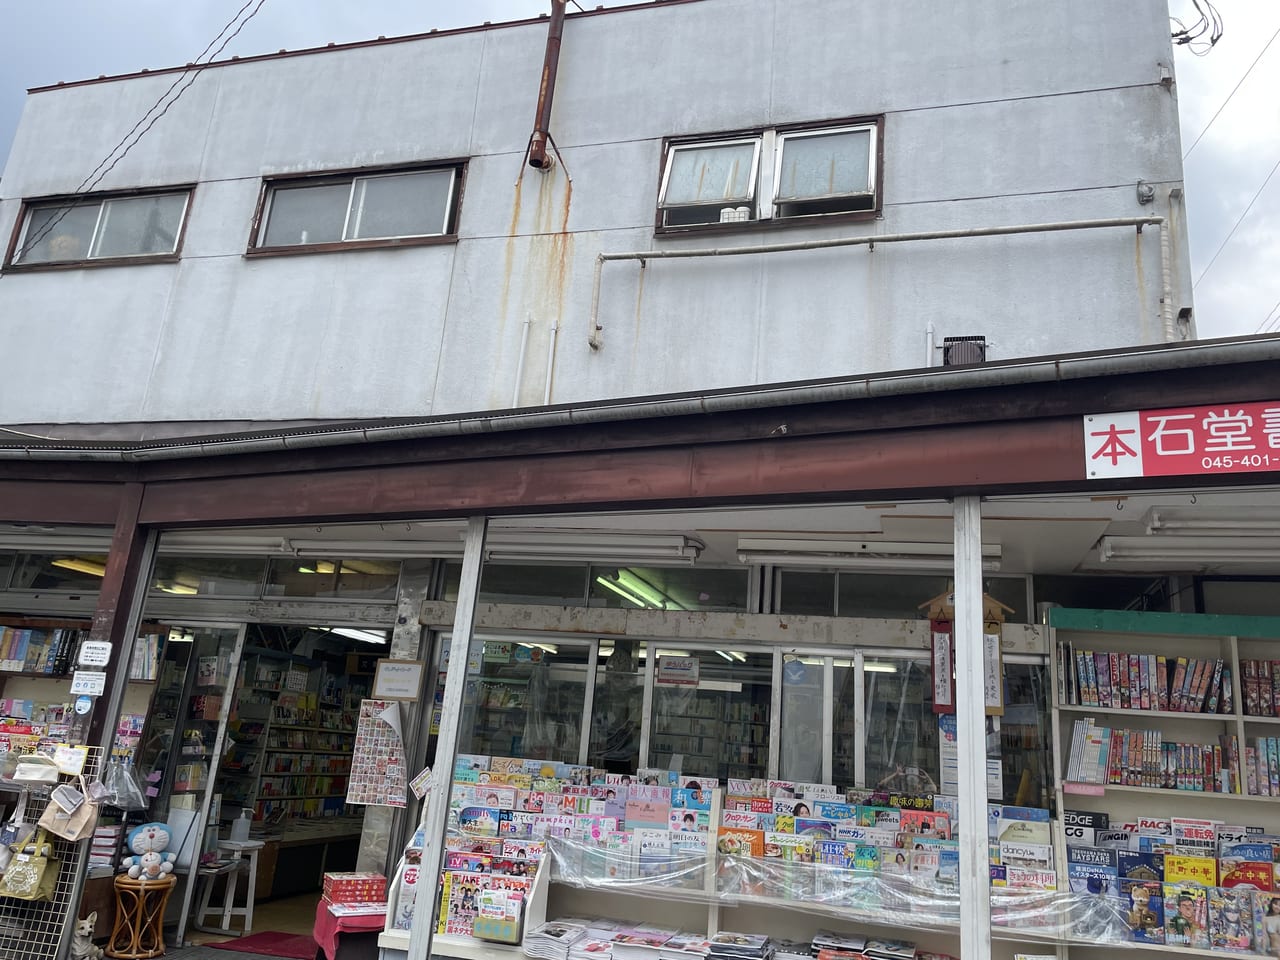 横浜市港北区 え 本屋の２階にある 本屋の二階 というお店 いったい何のお店なの 号外net 横浜市港北区